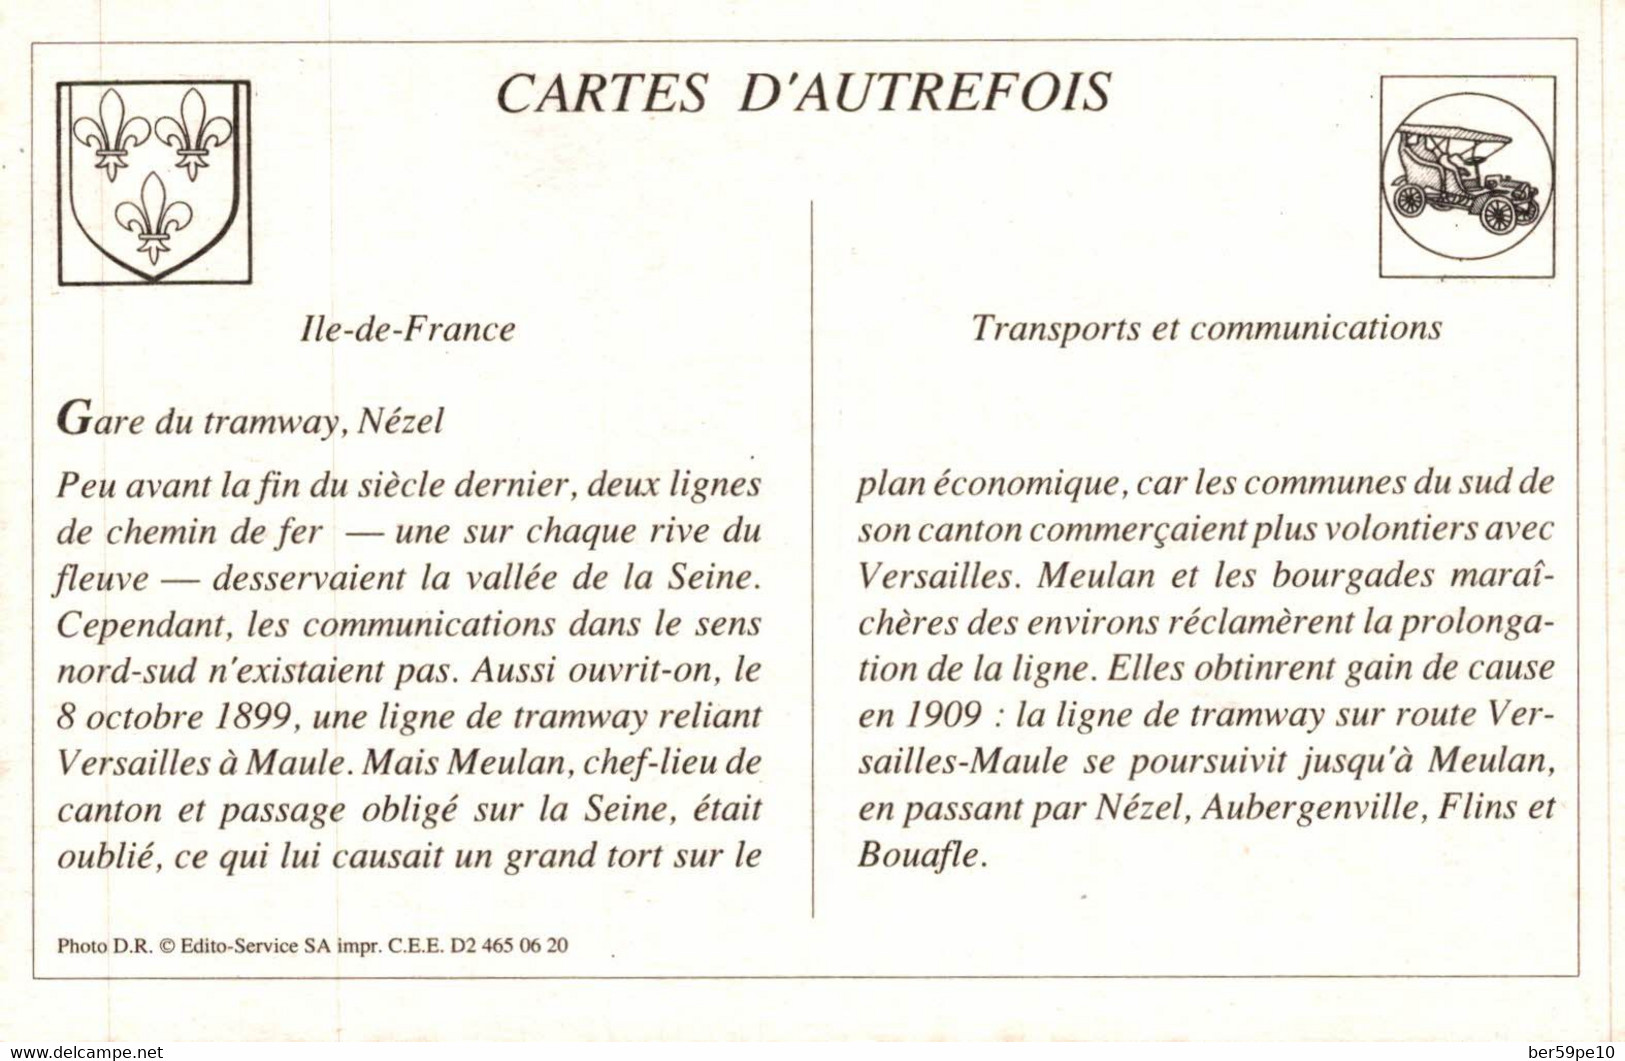 CARTE D'AUTREFOIS  TRANSPORTS ET COMMUNICATIONS  - ILE-DE-FRANCE  GARE DU TRAMWAY NEZEL - Ile-de-France